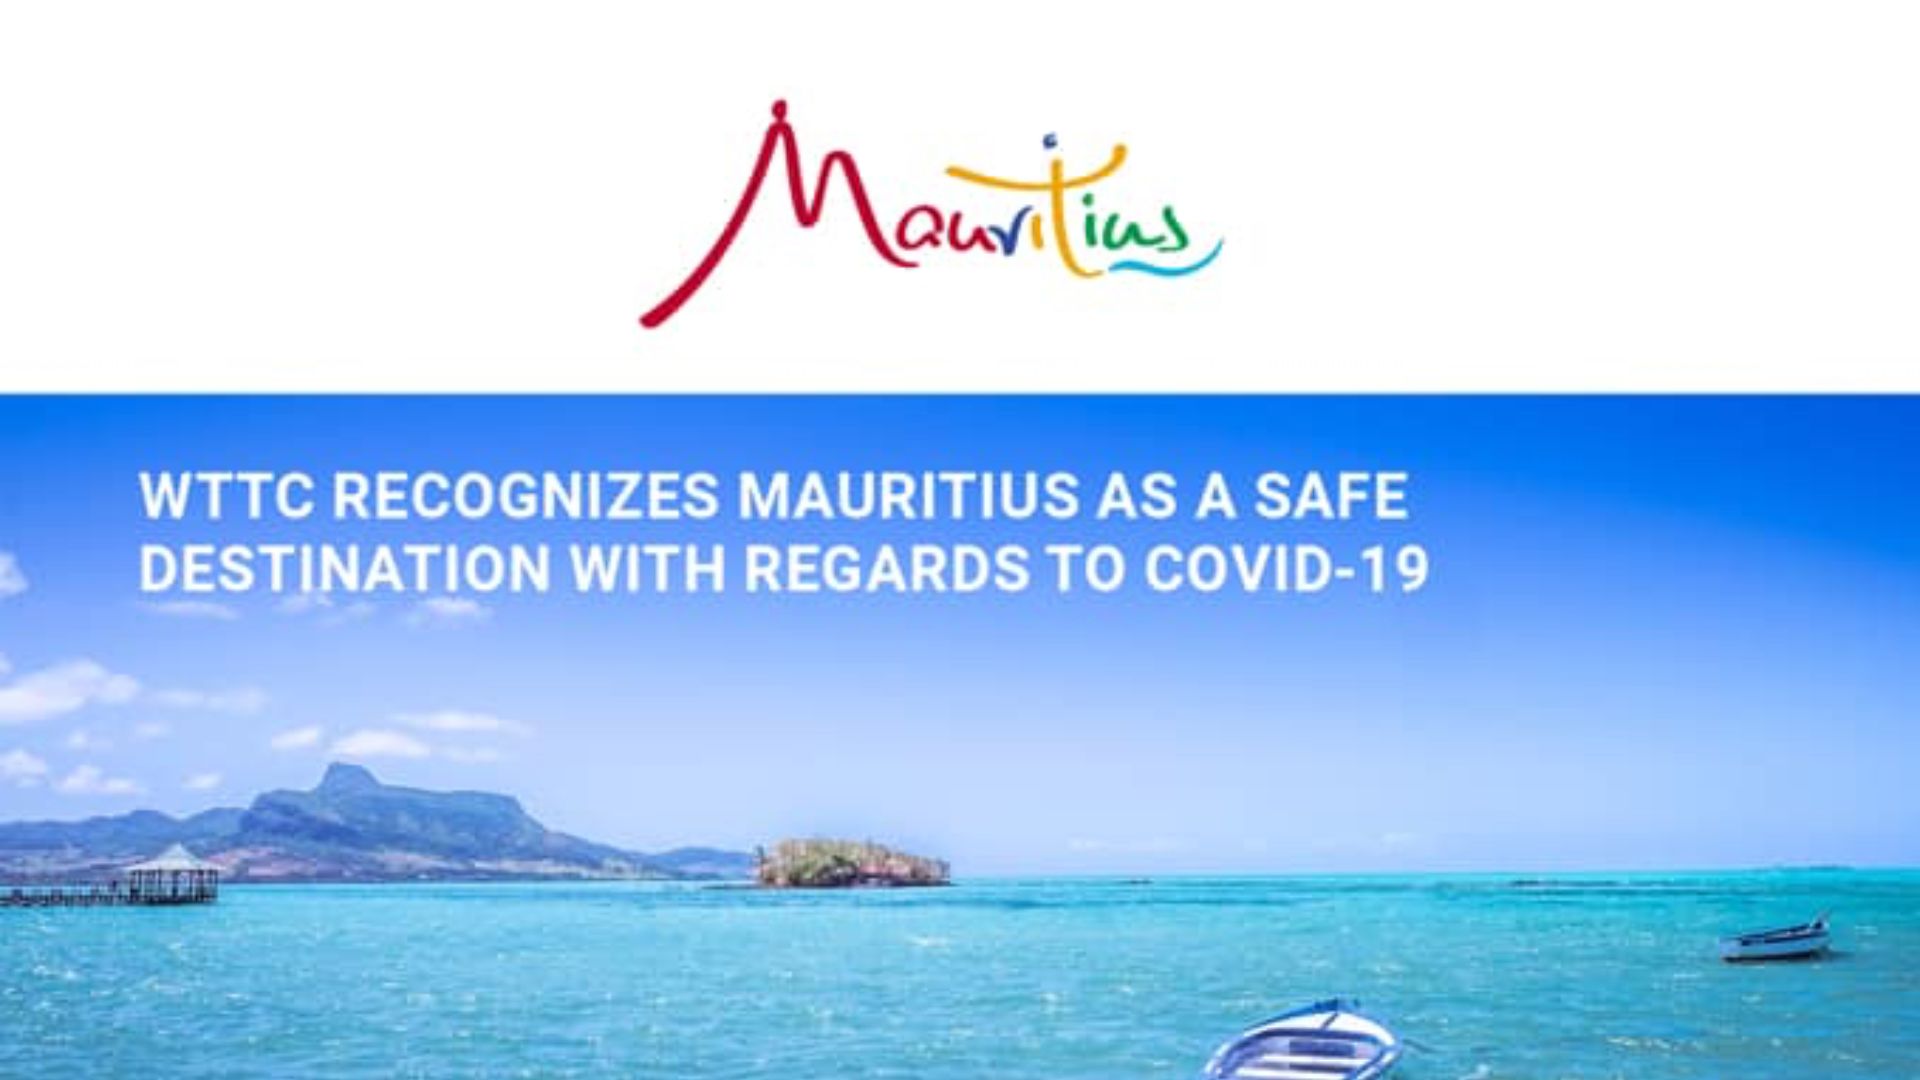 Le WTTC a reconnu Maurice comme une destination sûre